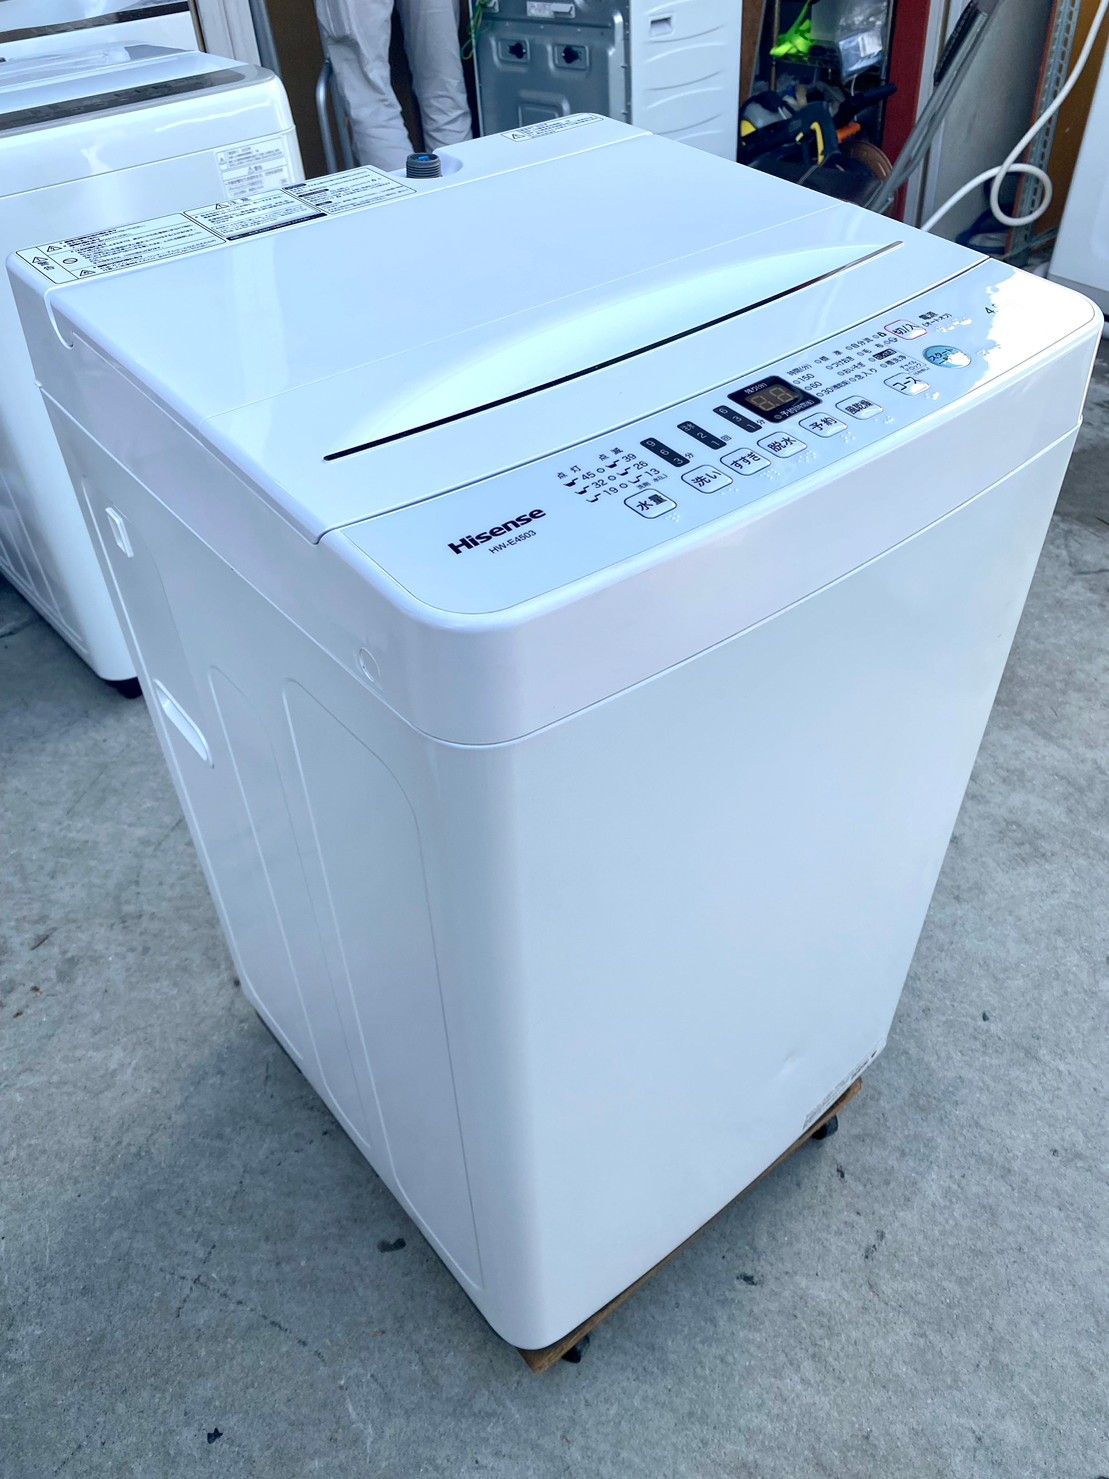 ハイセンス ◇ 全自動洗濯機 2020年製 4.5kg HW-E4503 ◇ 洗濯機 